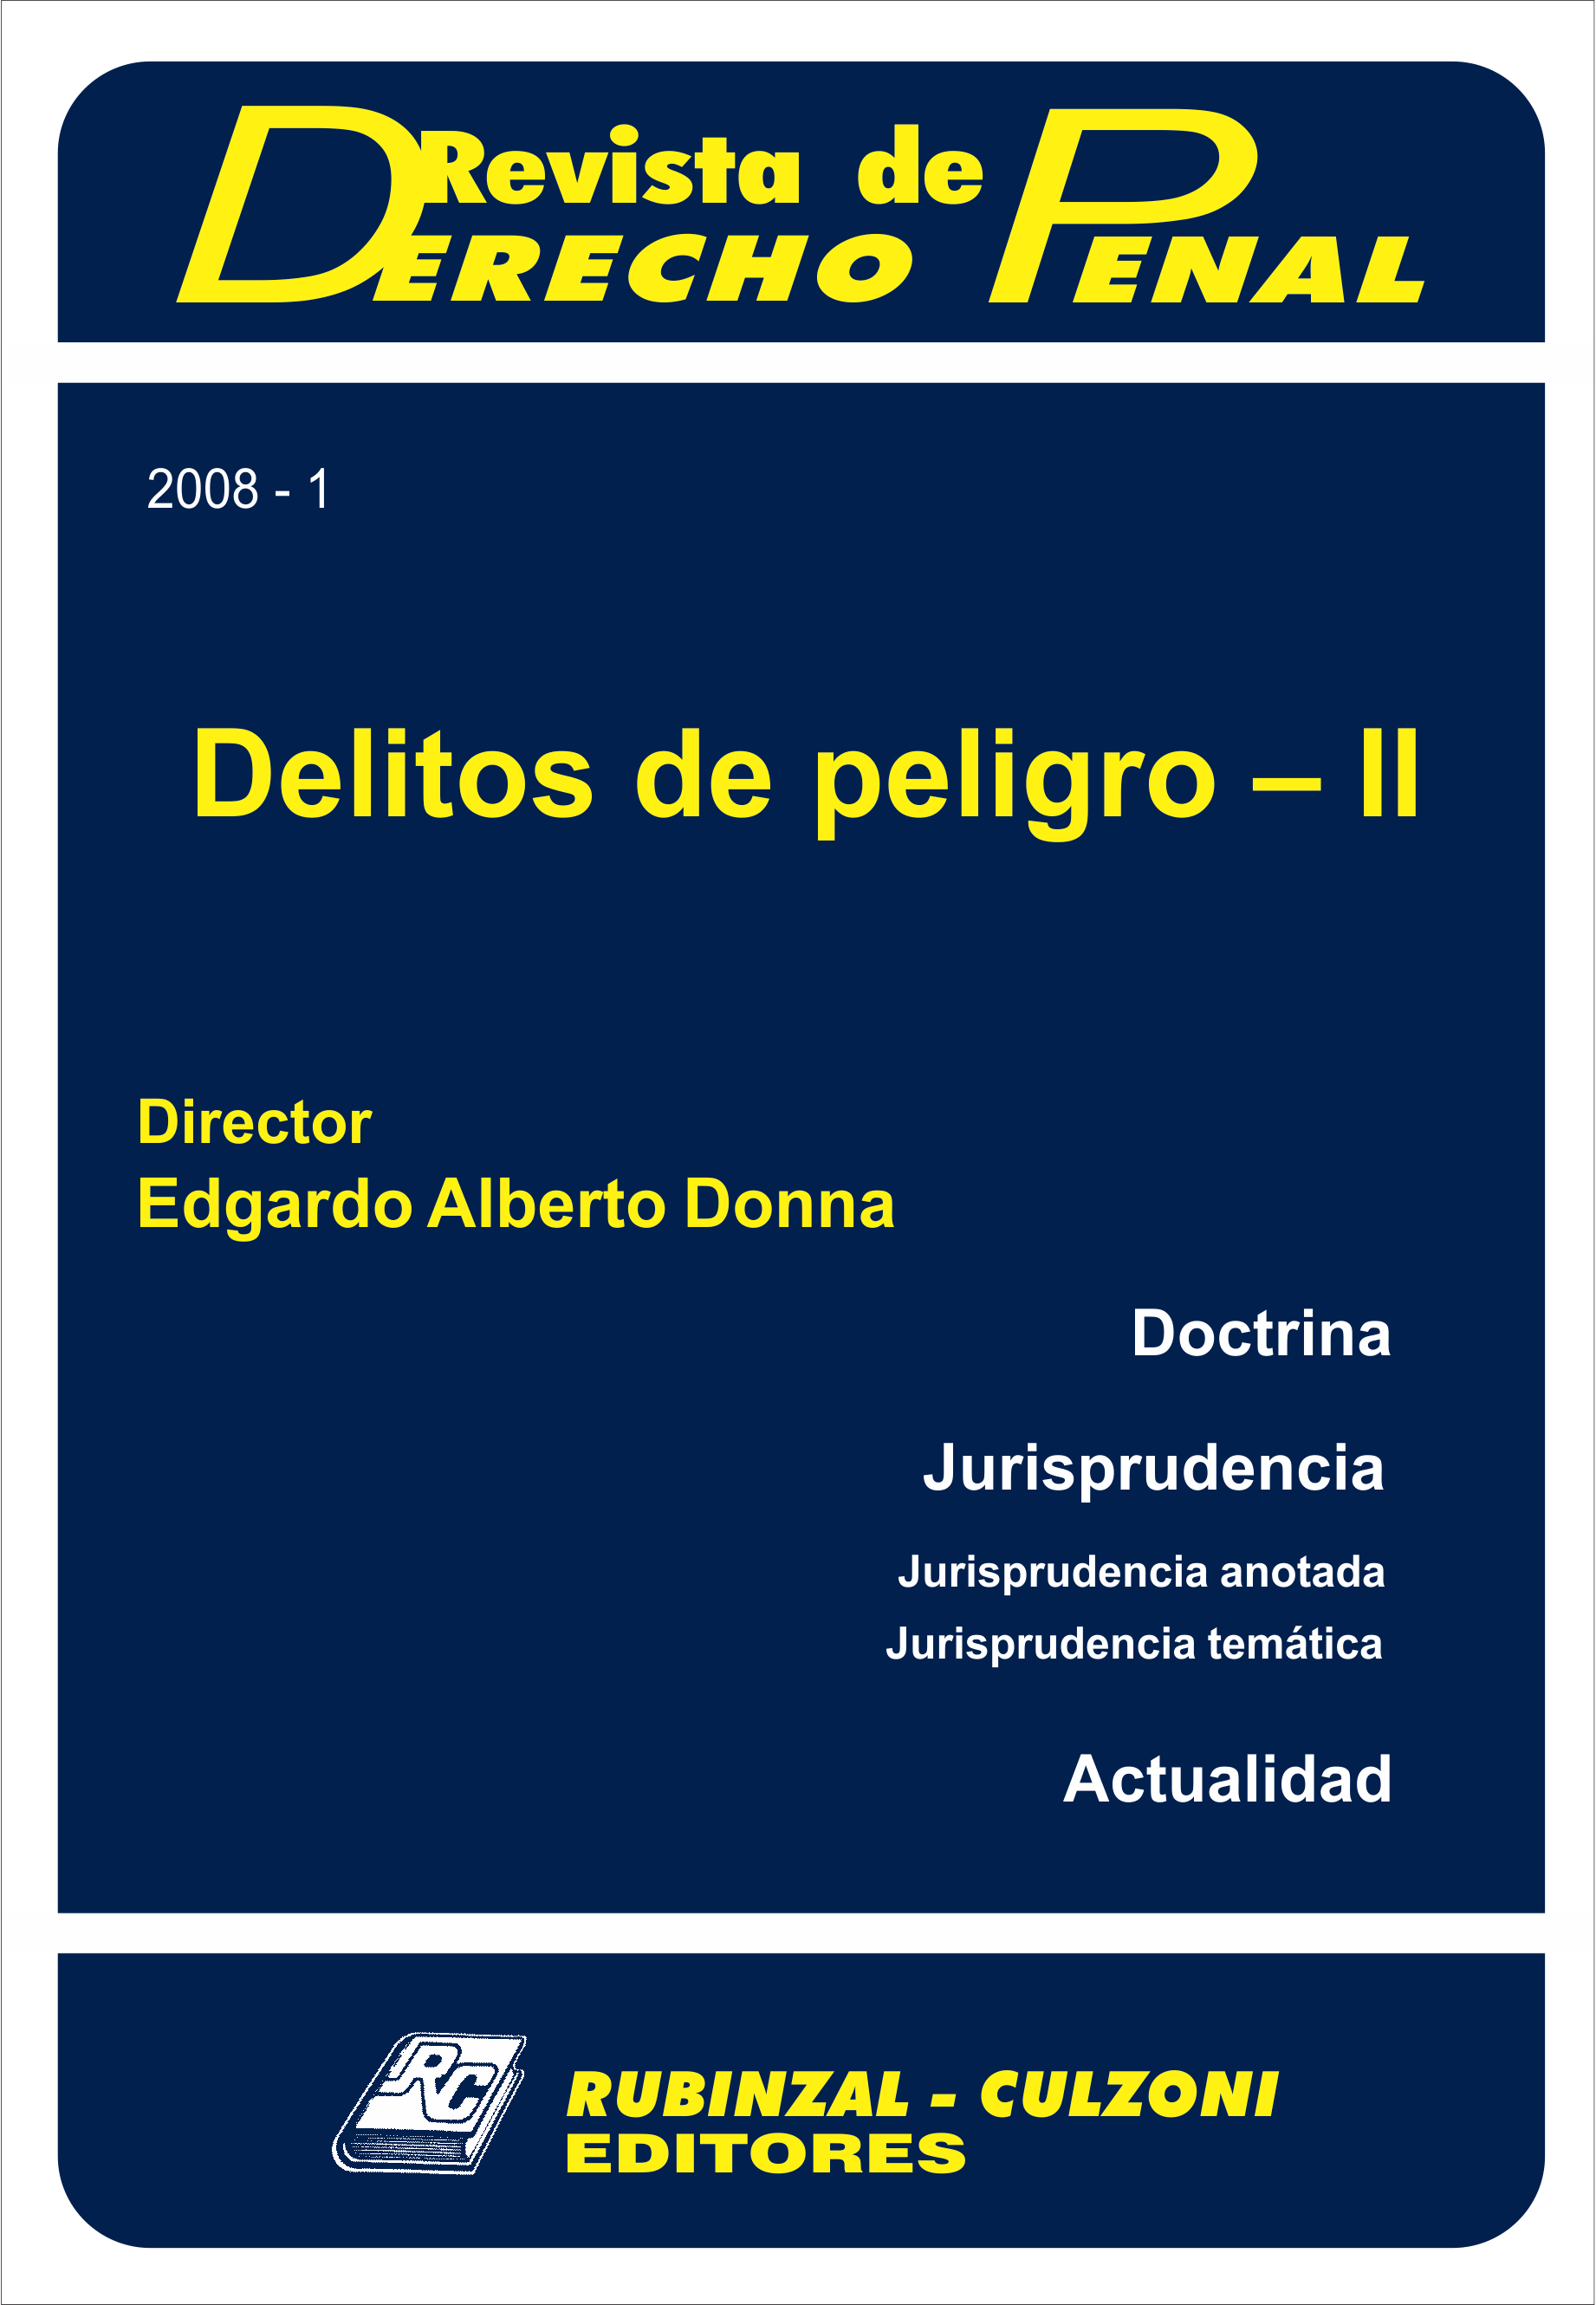 Revista de Derecho Penal - Delitos de peligro - II.